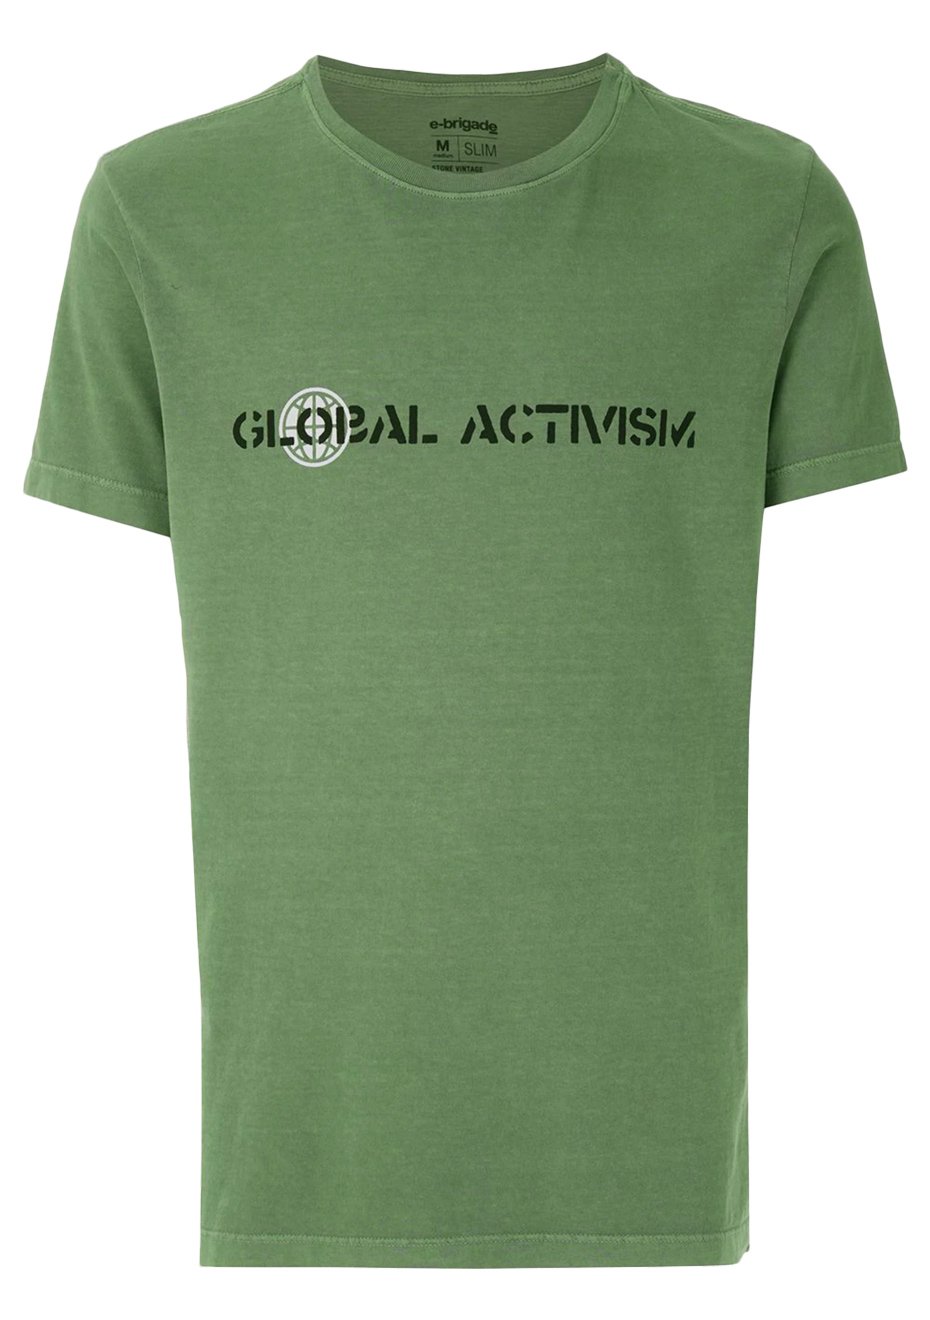 Camiseta Osklen Masculina Stone Vintage Global Activism Verde Oliva